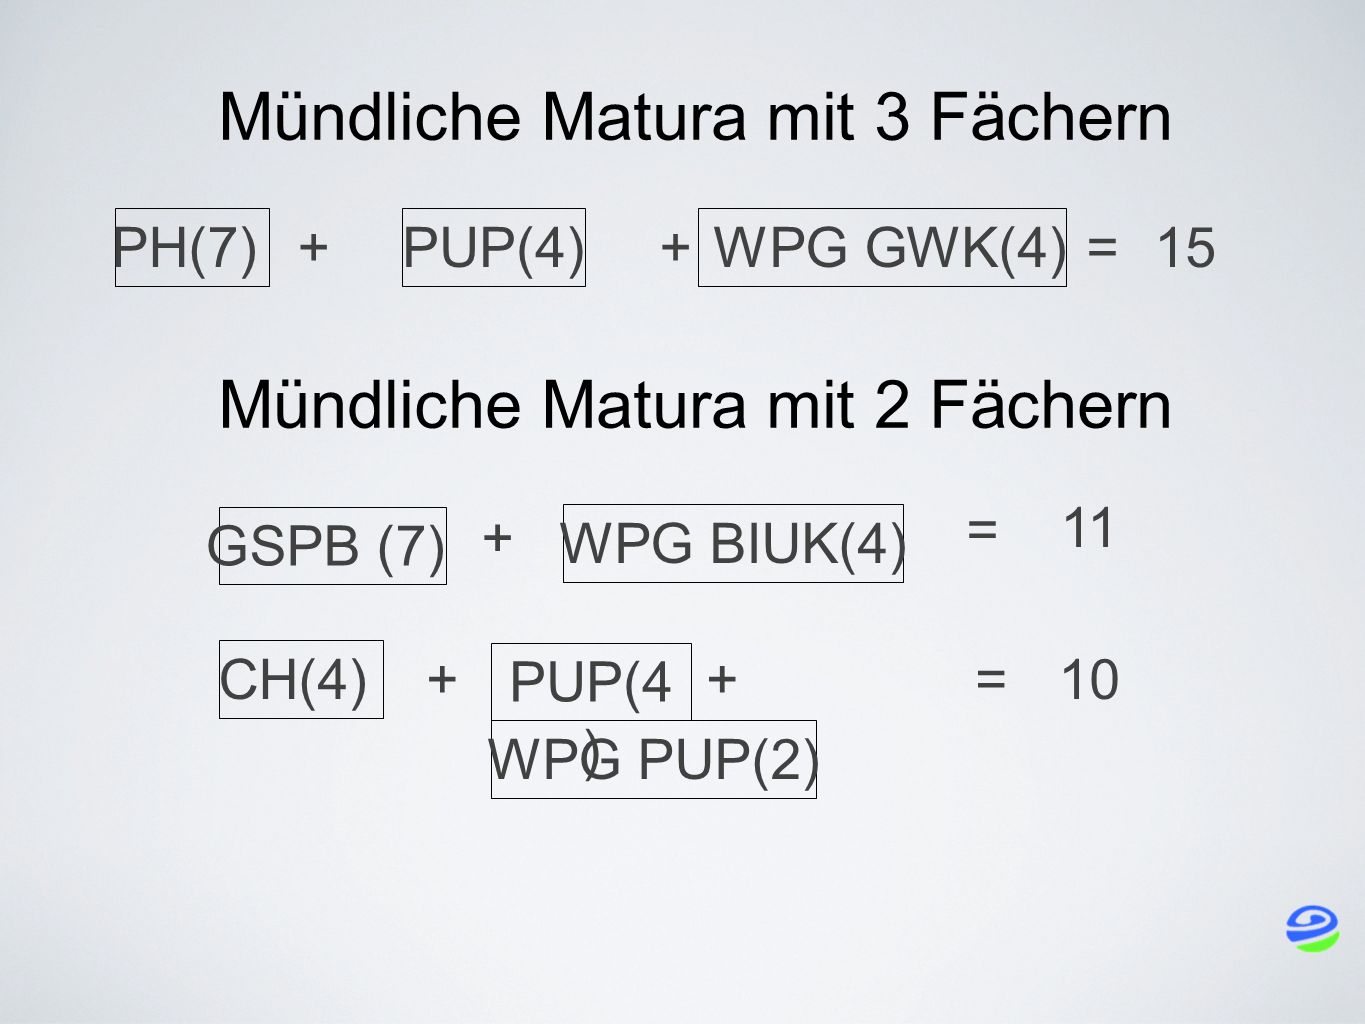 Mündliche Matura mit 3 Fächern CH(4) + WPG PUP(2) + PUP(4 ) =10 PH(7) + PUP(4) +=15 WPG GWK(4) GSPB (7) + WPG BIUK(4) = 11 Mündliche Matura mit 2 Fächern